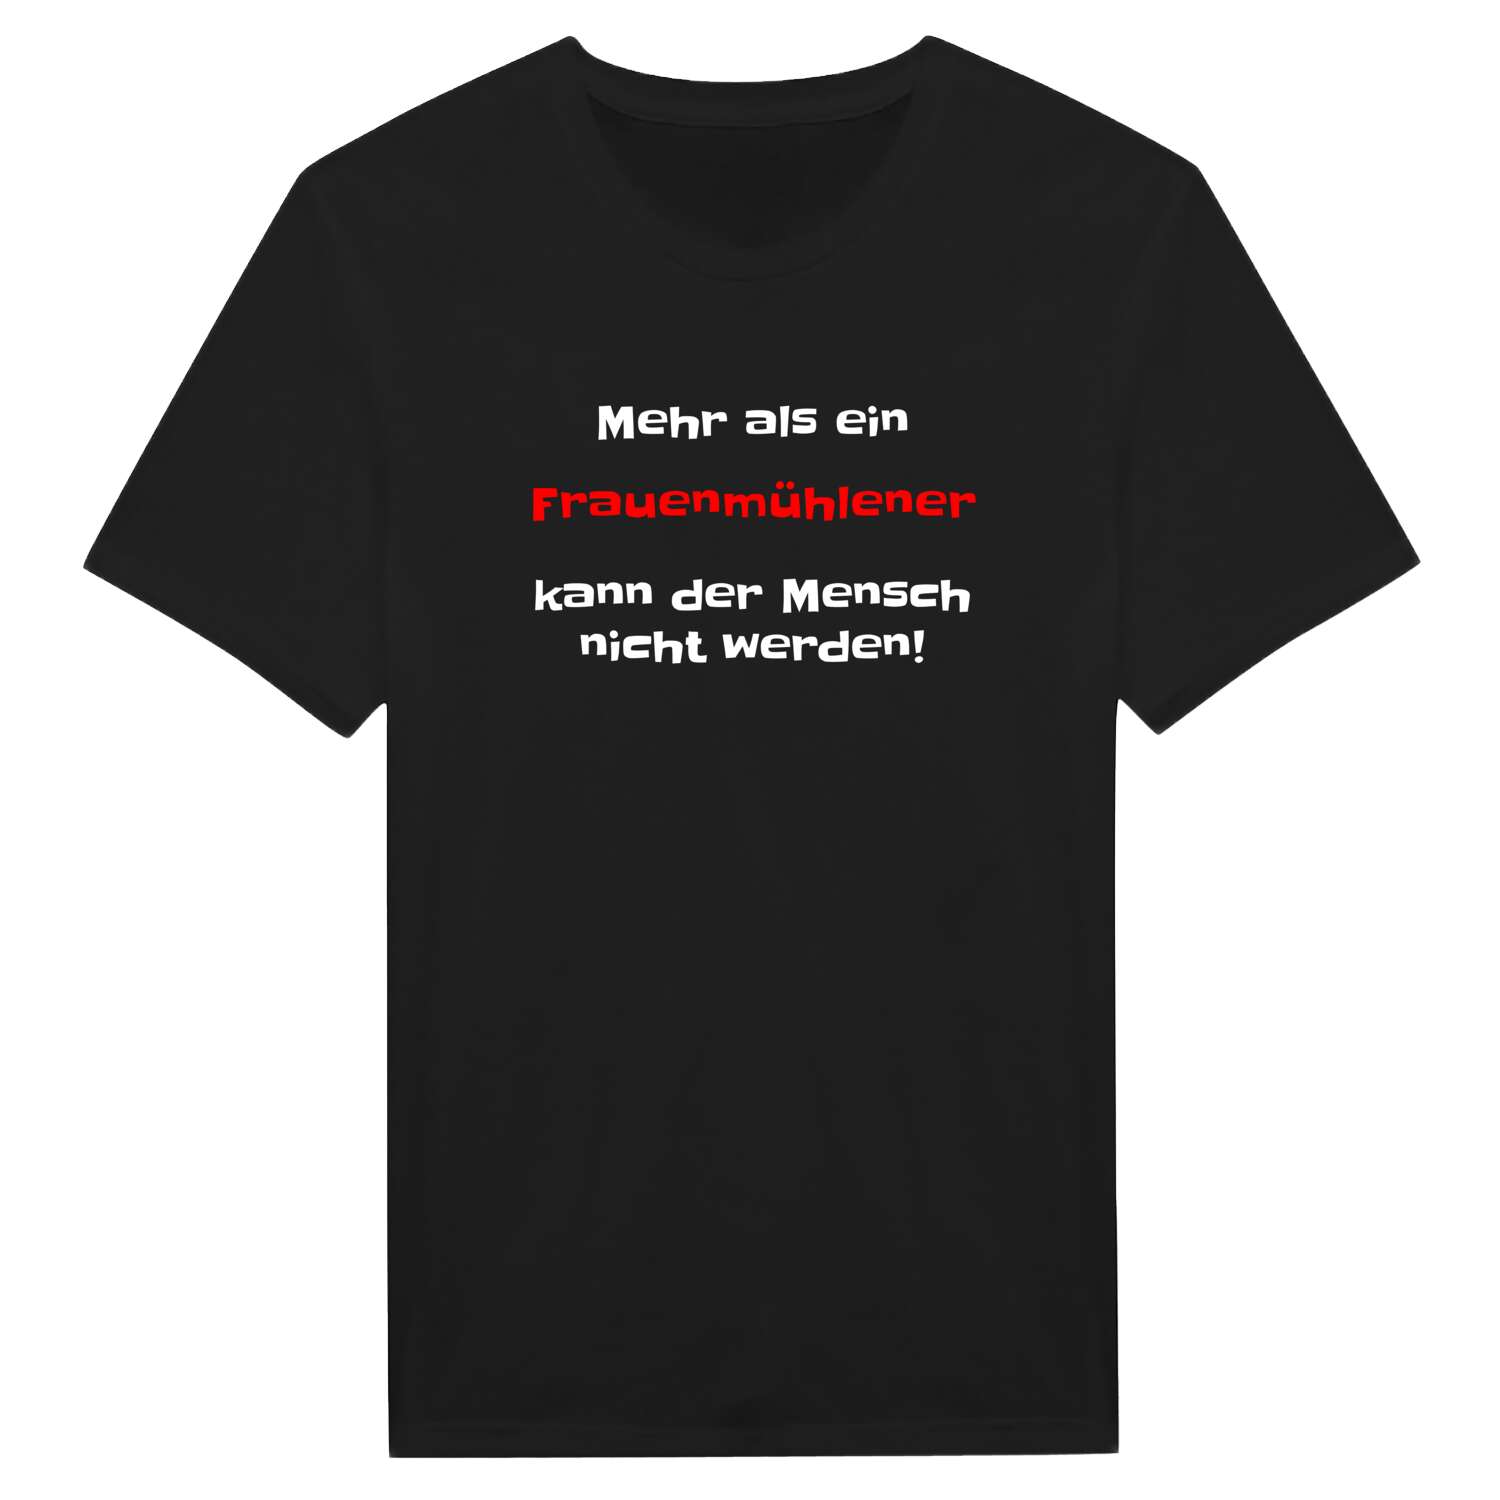 Frauenmühle T-Shirt »Mehr als ein«